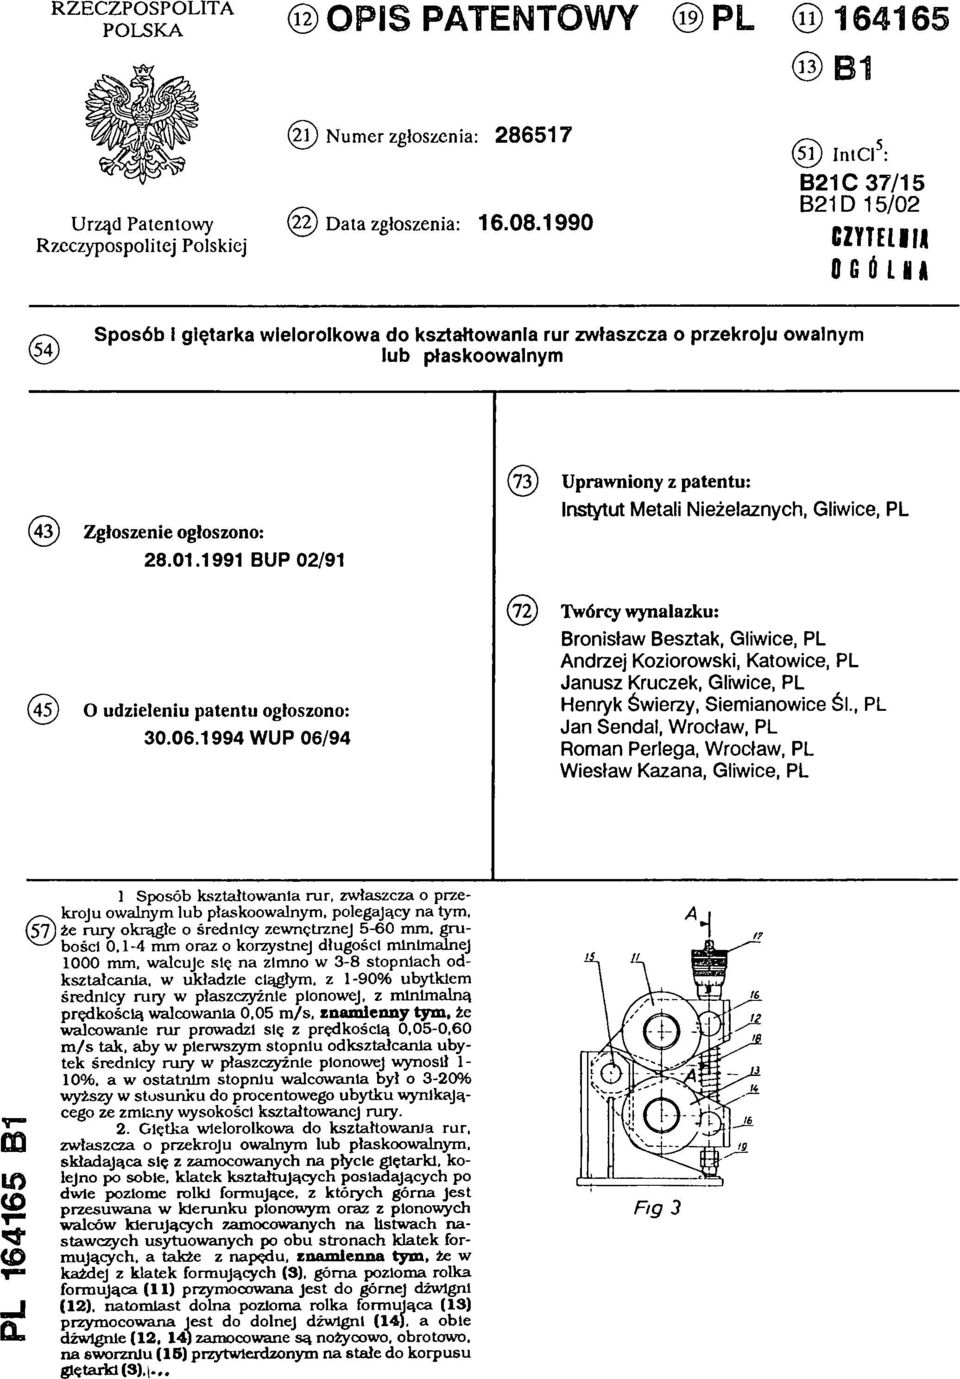 1991 BUP 02/91 (73) Uprawniony z patentu: Instytut Metali Nieżelaznych, Gliwice, PL (45) O udzieleniu patentu ogłoszono: 30.06.